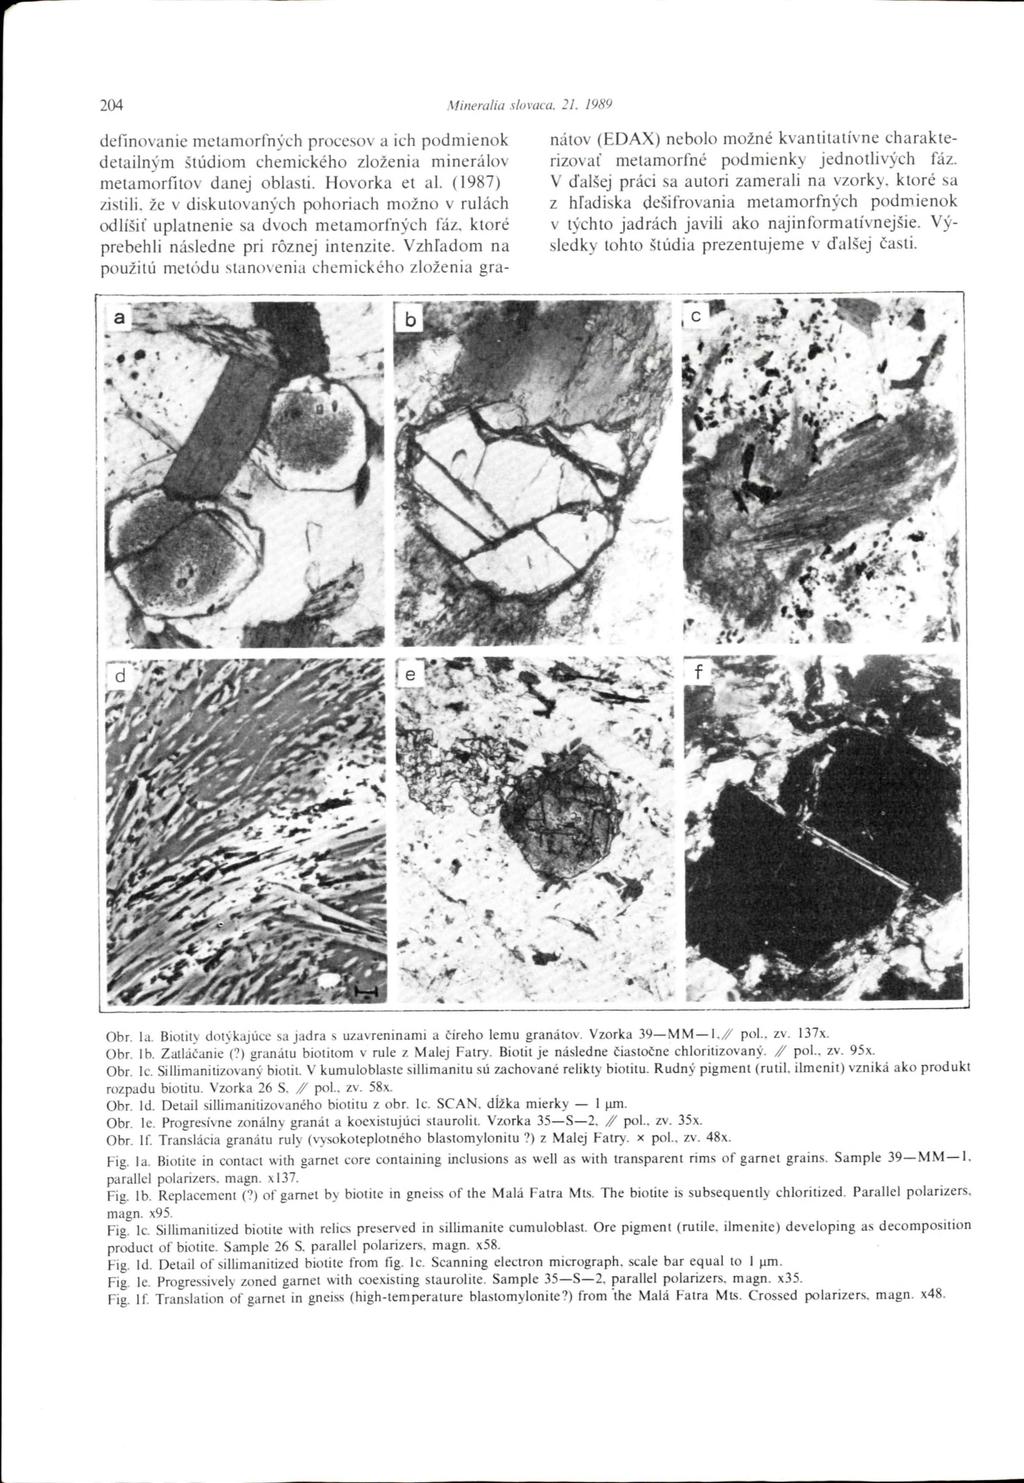 24 Mineralia lov definovanie metamorfných proceov a ich podmienok detailným štúdiom chemického zloženia minerálov metamorfitov danej oblati. Hovorka et al.